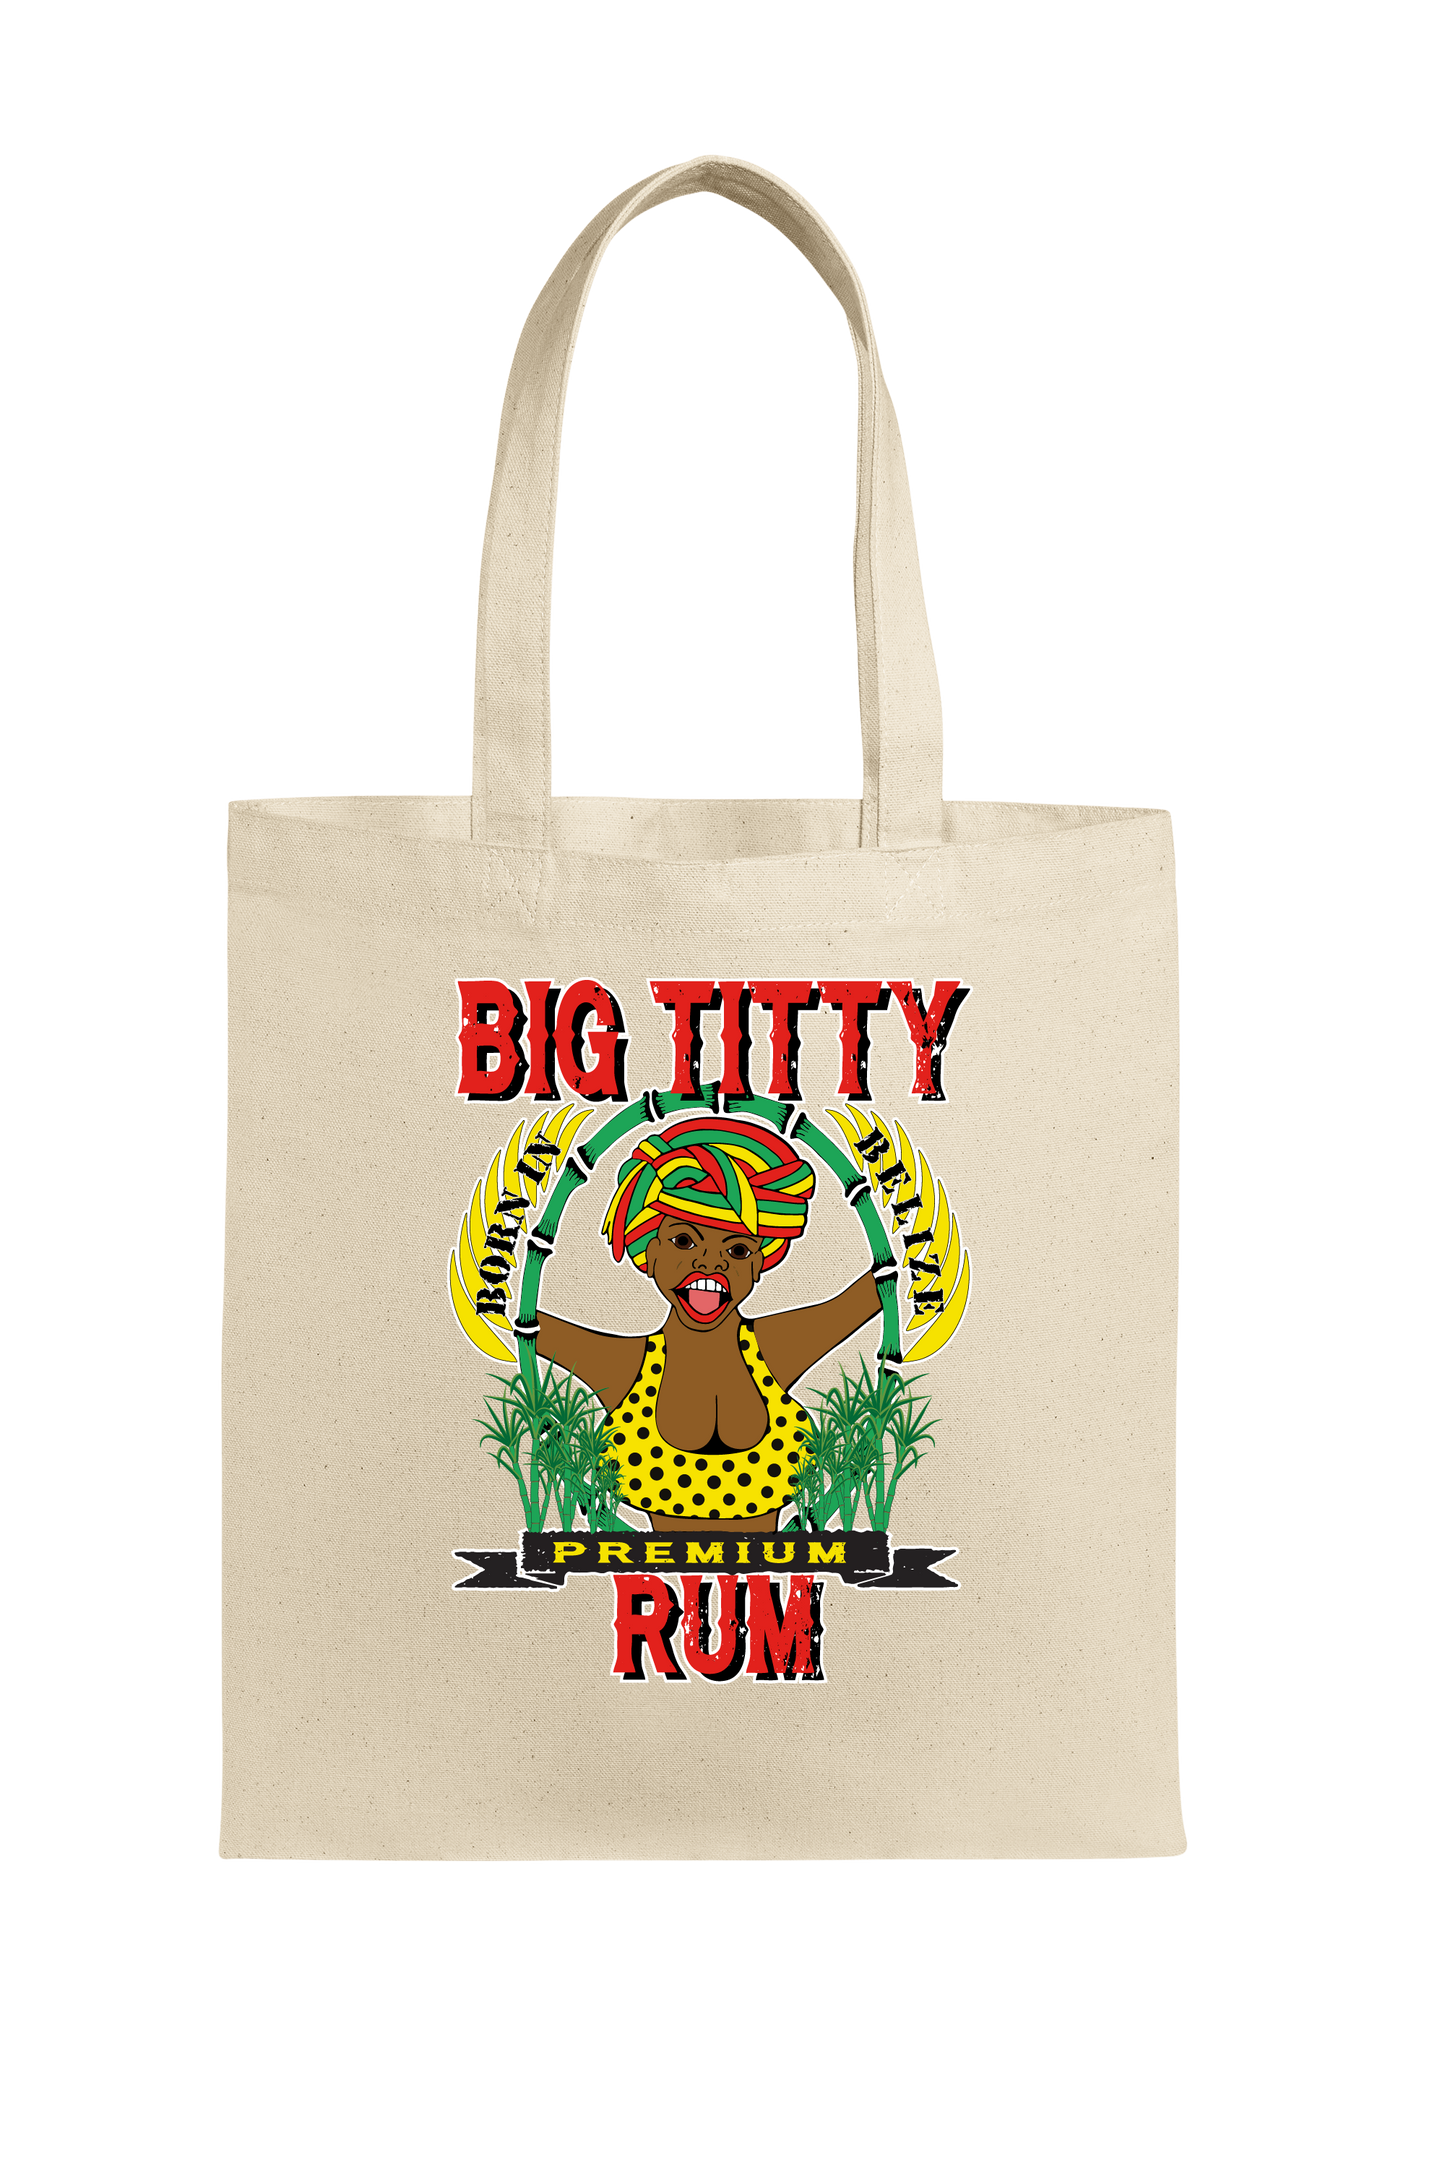 Big Titty Rum beach bag